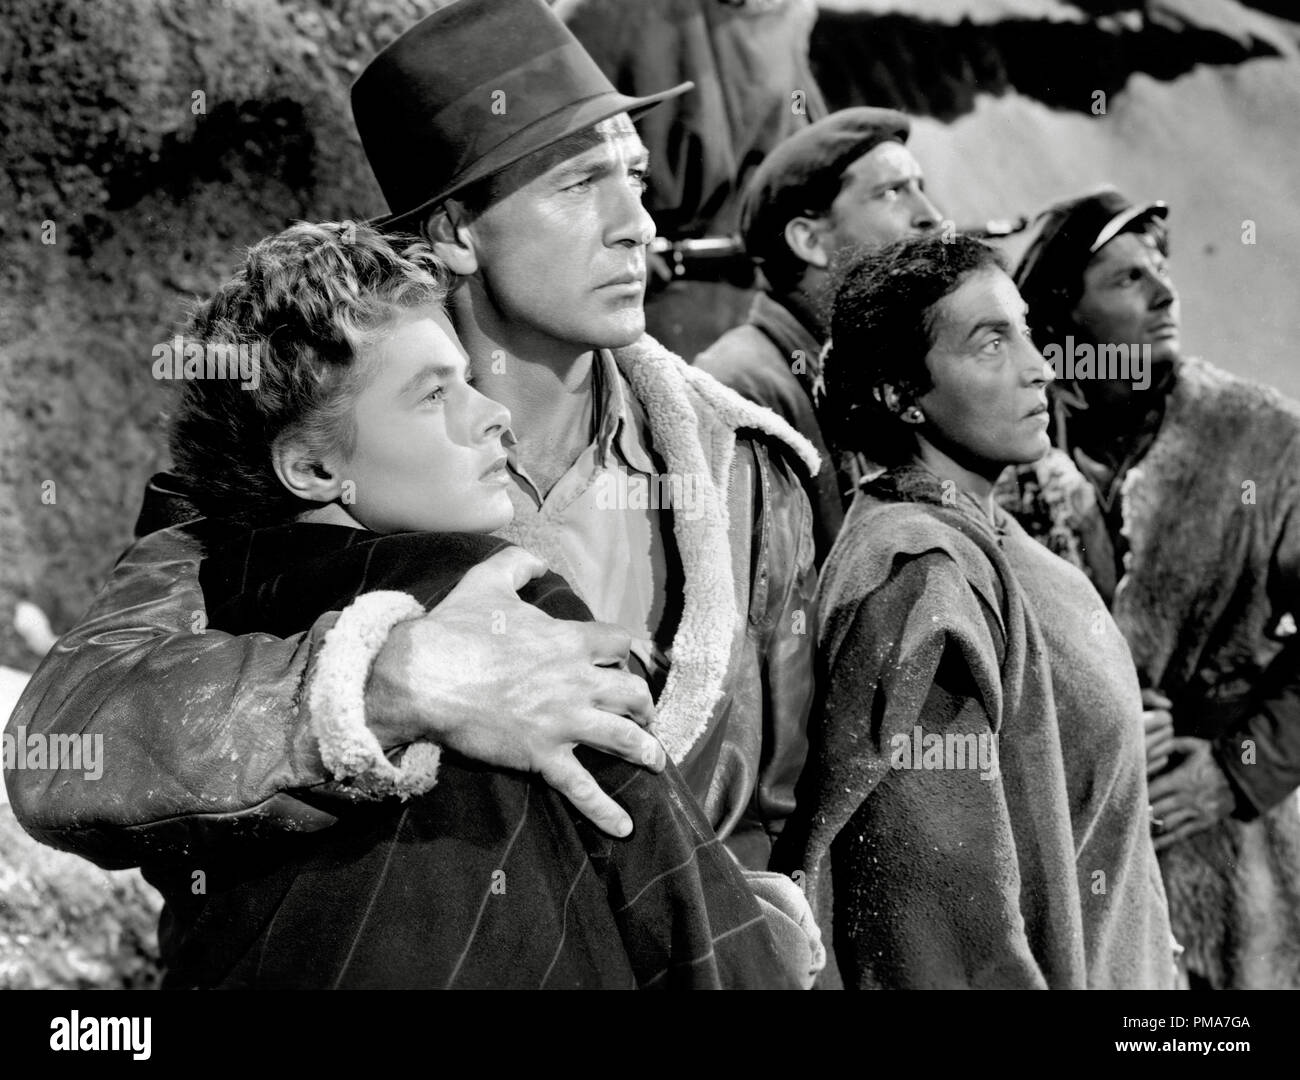 Ingrid Bergman, Gary Cooper, Katina Paxinou, "Wem die Stunde schlägt", 1943 Paramount Pictures Datei Referenz # 32263 403 THA Stockfoto